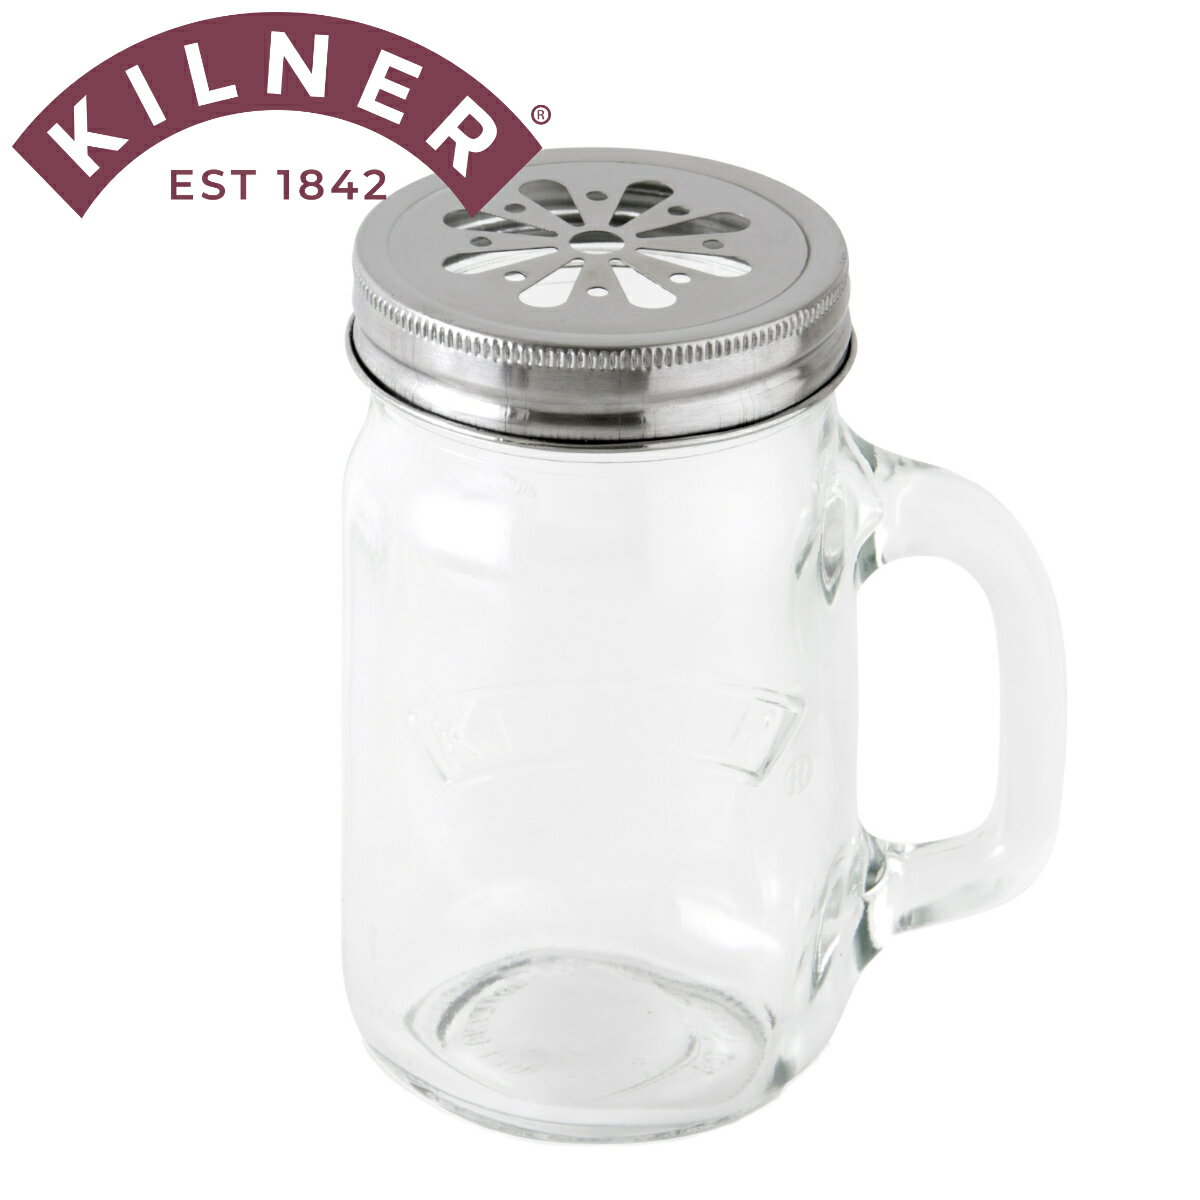 保存容器 KILNER HANDELD JAR with FLOWER RID （ キルナー ジャー ハンドル付き マグ グラス コップ 4..